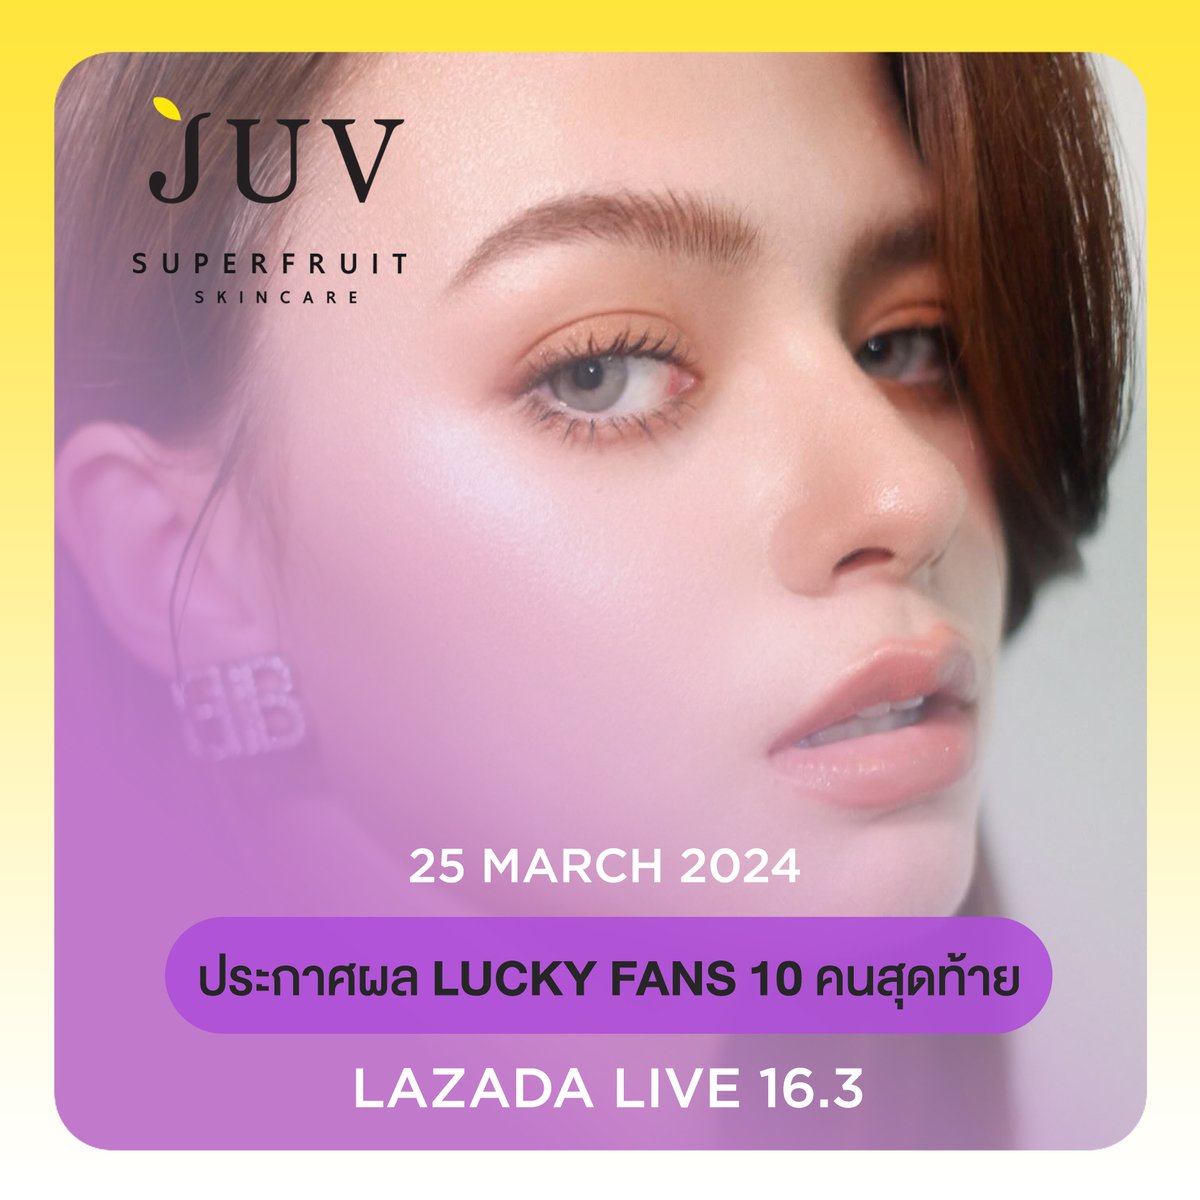 #ประกาศผล Lucky Fans 10 คนสุดท้ายจากแคมเปญ Lazada Live 16.3 JUV Flower Lover with Becky (16-20 มี.ค. 67) ยินดีด้วยนะคะ

🎊 Lucky Fans รบกวน DM หาแอดมินทาง X: JUV Superfruit / WeChat: juvsuperfruit เพื่อยืนยันสิทธิ์ ภายในวันที่ 25 - 29 มี.ค. 67 เวลา 15.00 น. (03.00 pm.)